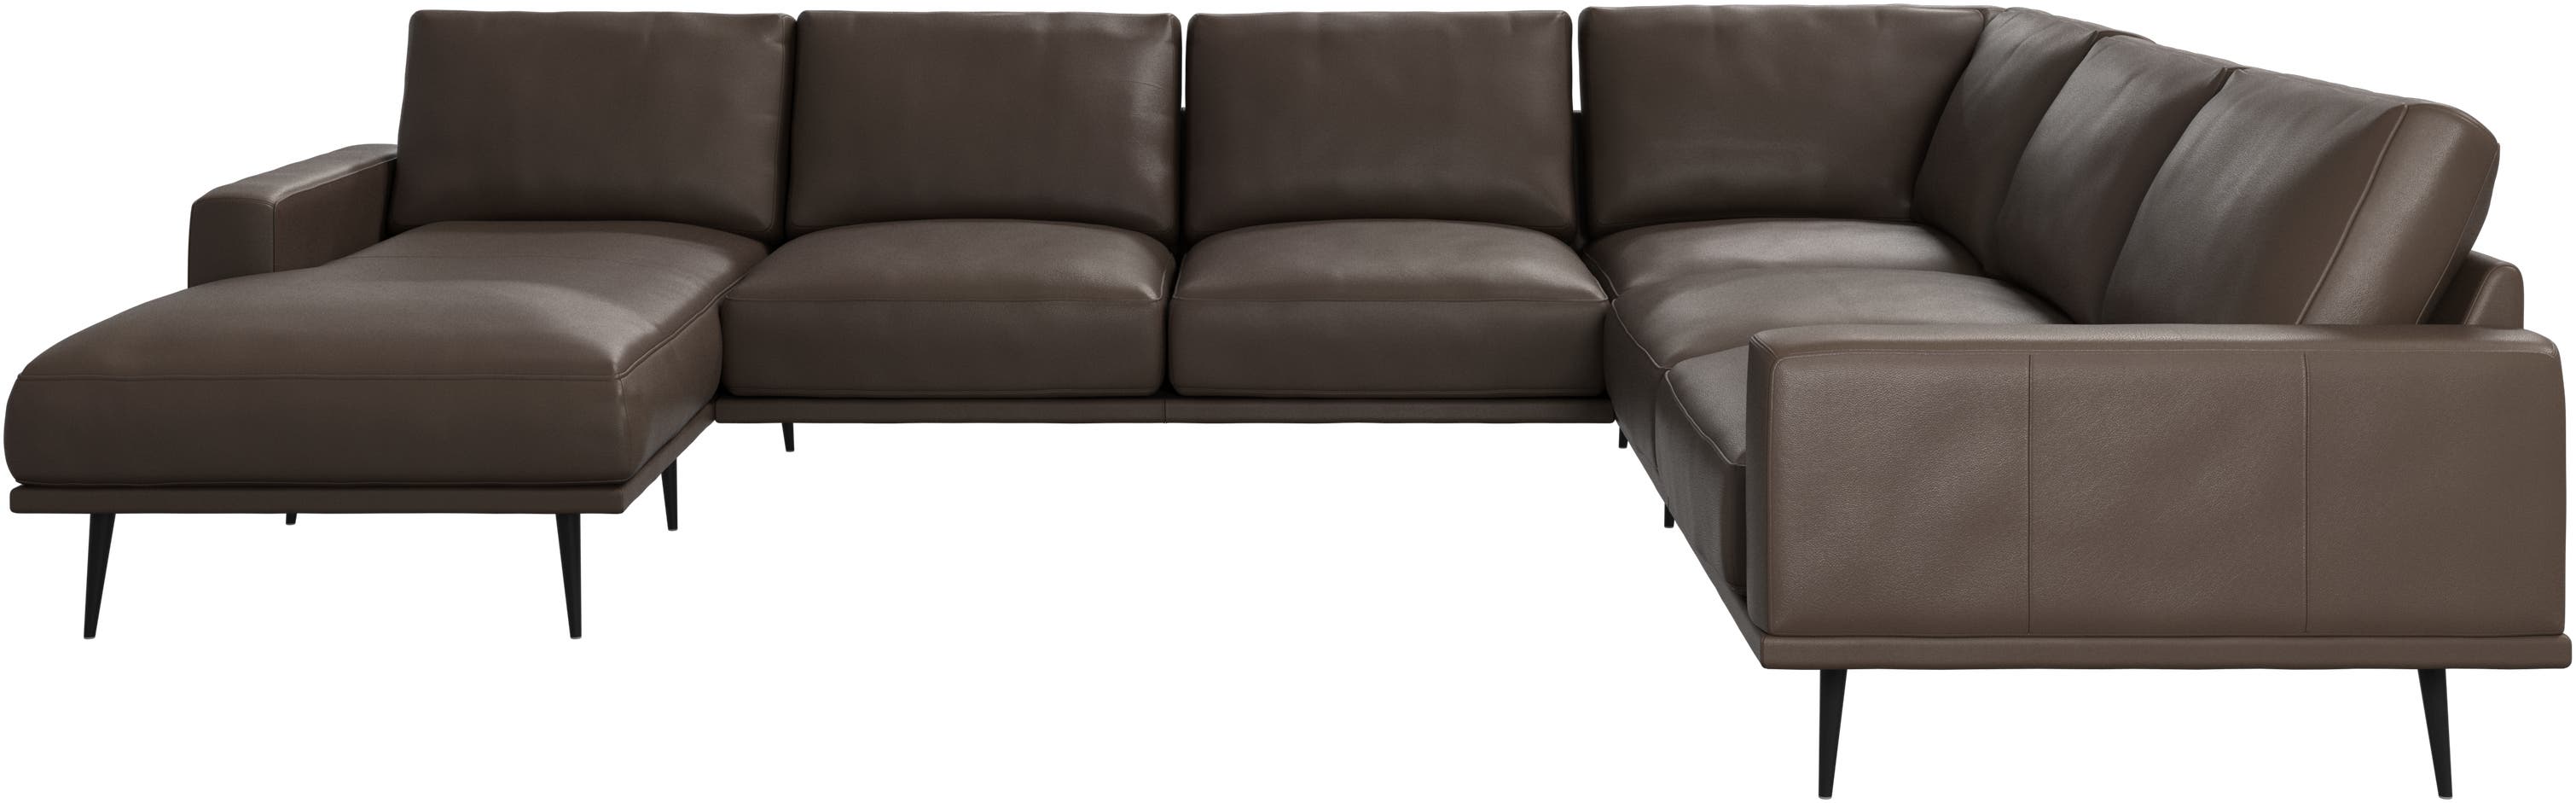 γωνιακός καναπές Carlton με μονάδα resting